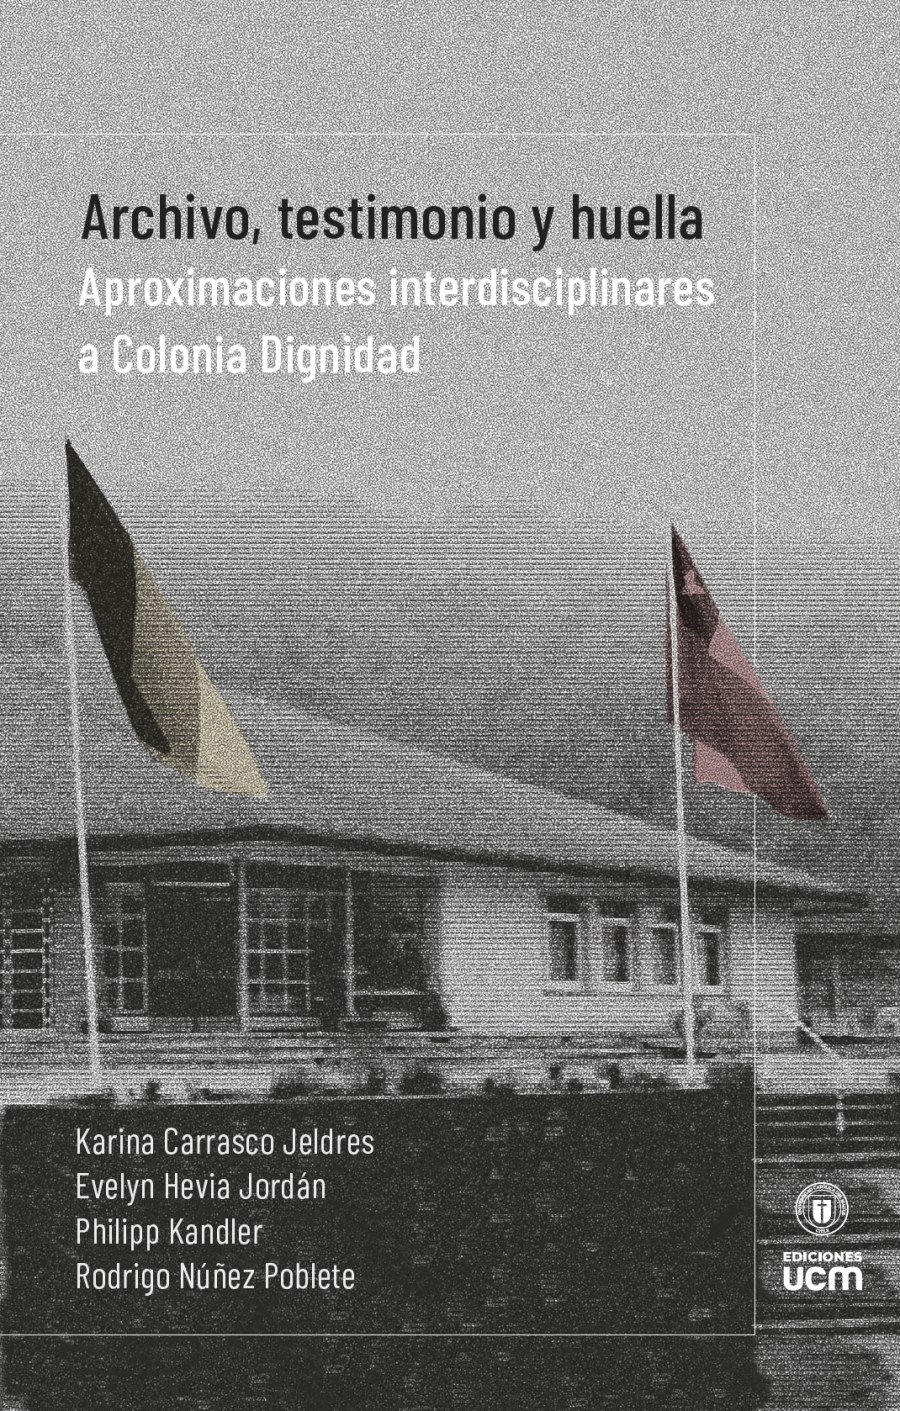 Ediciones UCM publicó inédita investigación sobre Colonia Dignidad